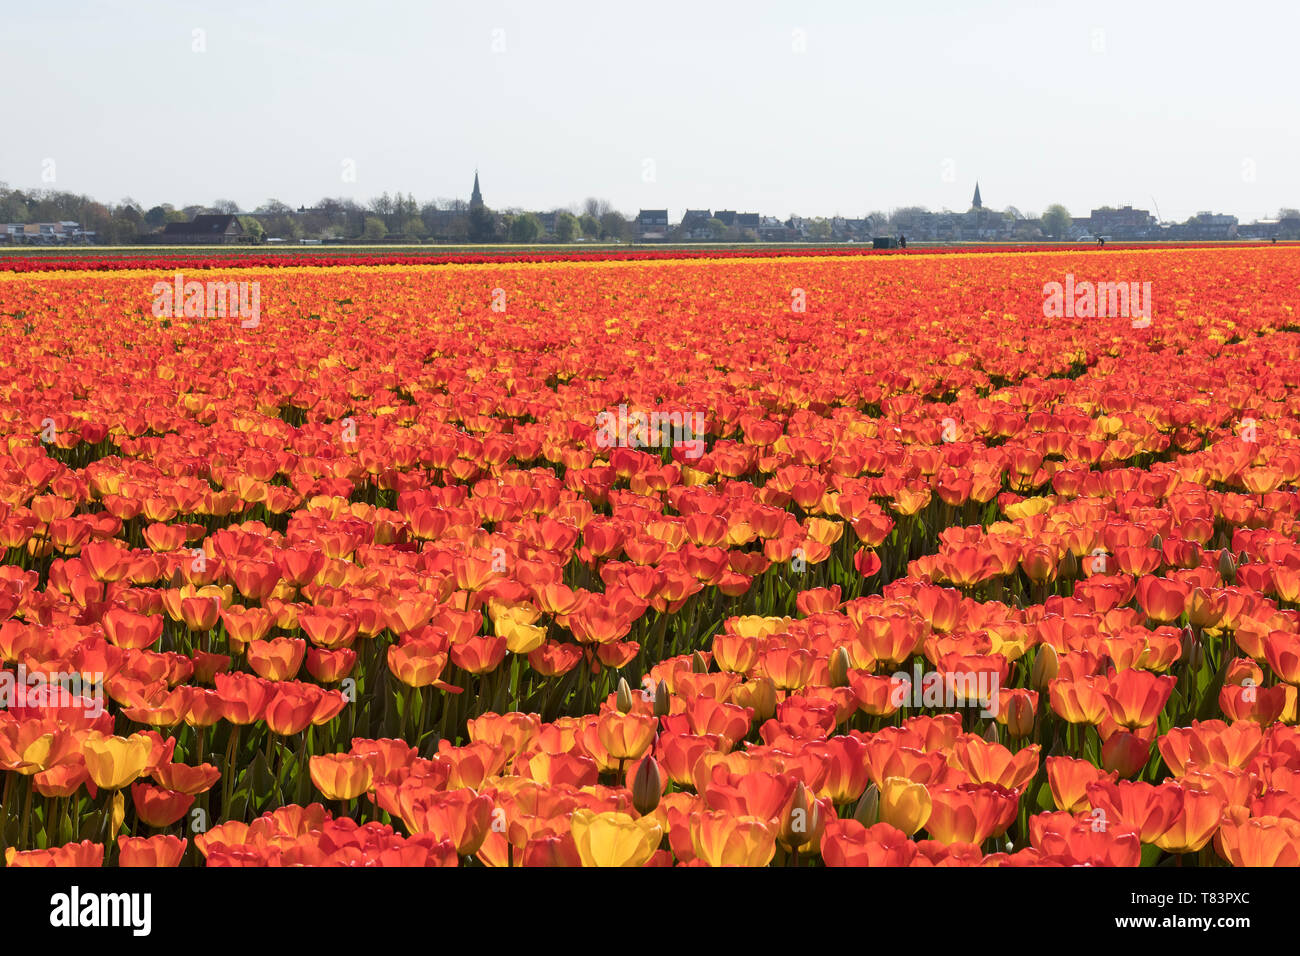 Lisse, Niederlande - 18 April 2019: Traditionelles Holländisches Tulpenfeld mit Reihen von roten und gelben Blumen und Kirchtürme in den Hintergrund Stockfoto